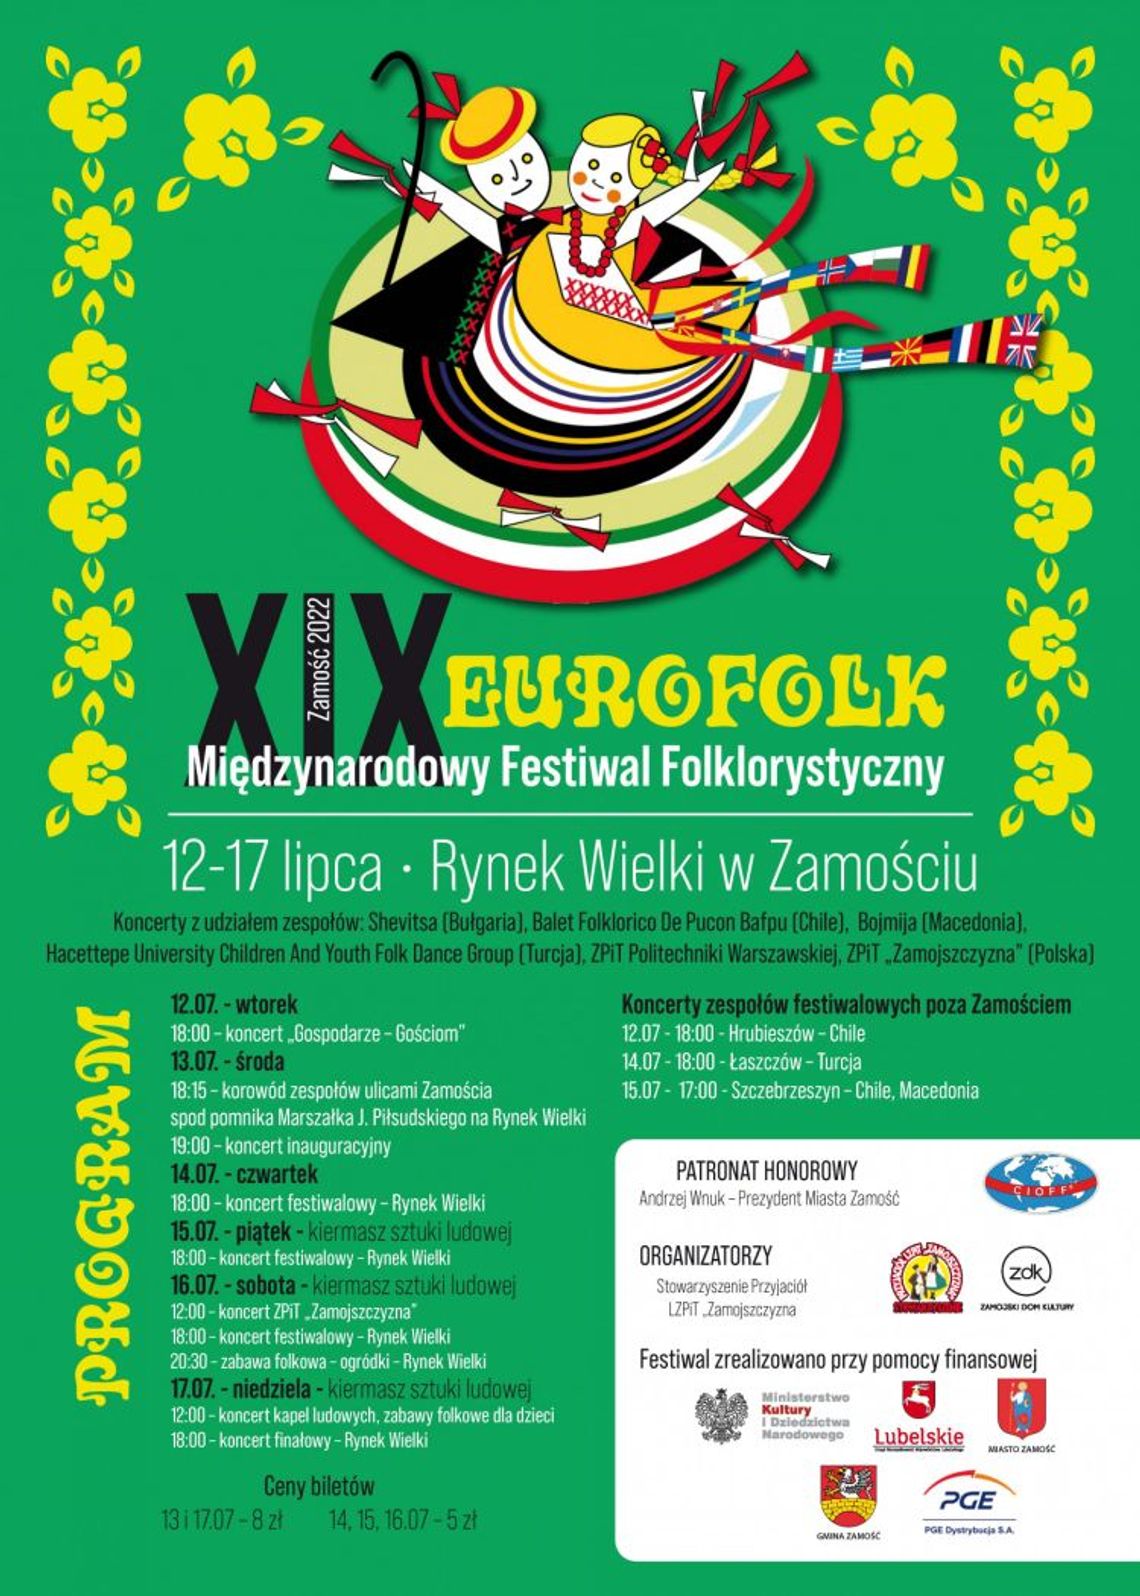 XIX Międzynarodowy Festiwal Folklorystyczny EUROFOLK